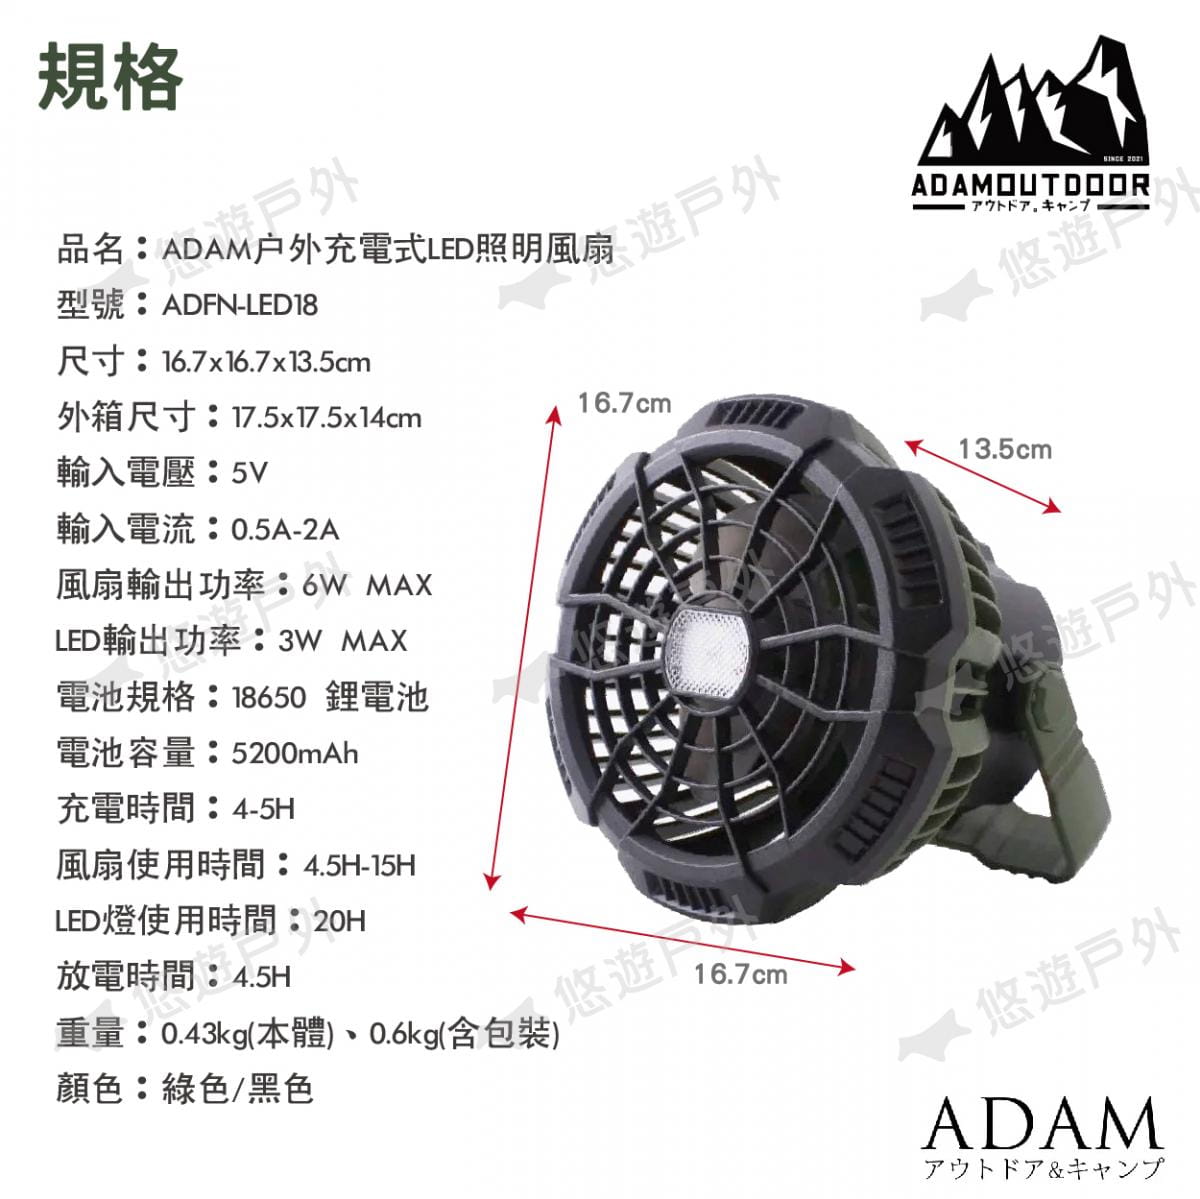 【ADAM】ADAM戶外充電式LED照明風扇立式ADFN-LED18 悠遊戶外 5